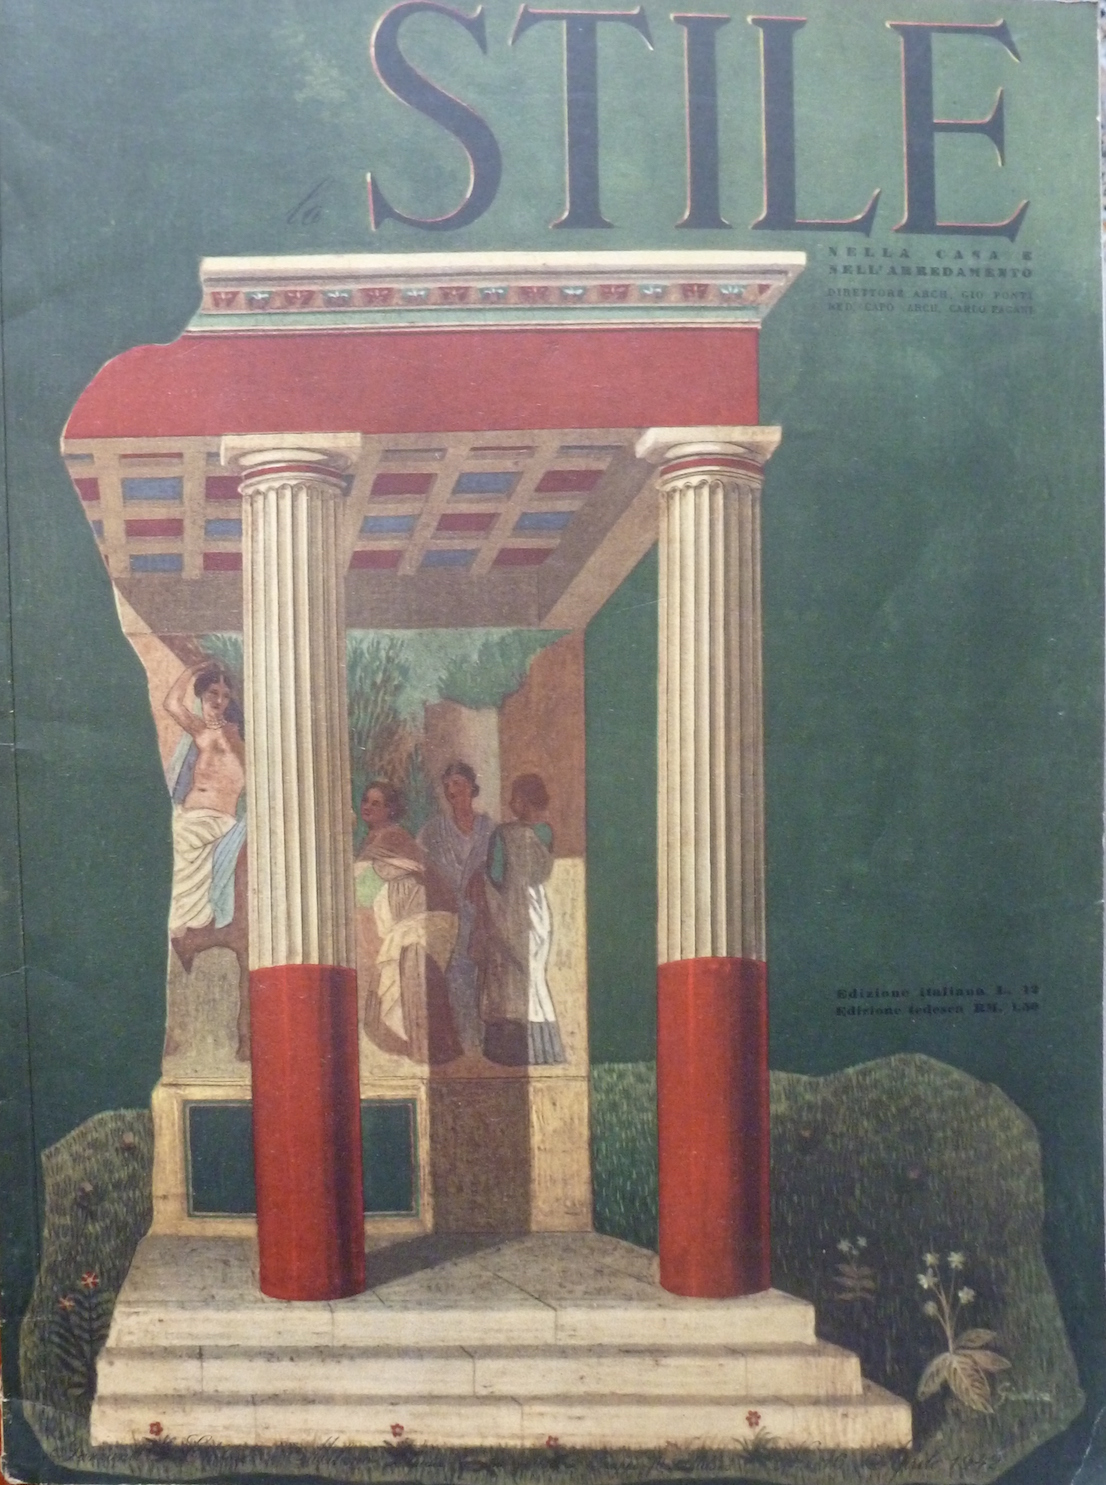 Lo Stile 16, 1942. Copertina Gienlica (Gio Ponti, Enrico Bo, Lina Bo Bardi, Carlo Pagani).